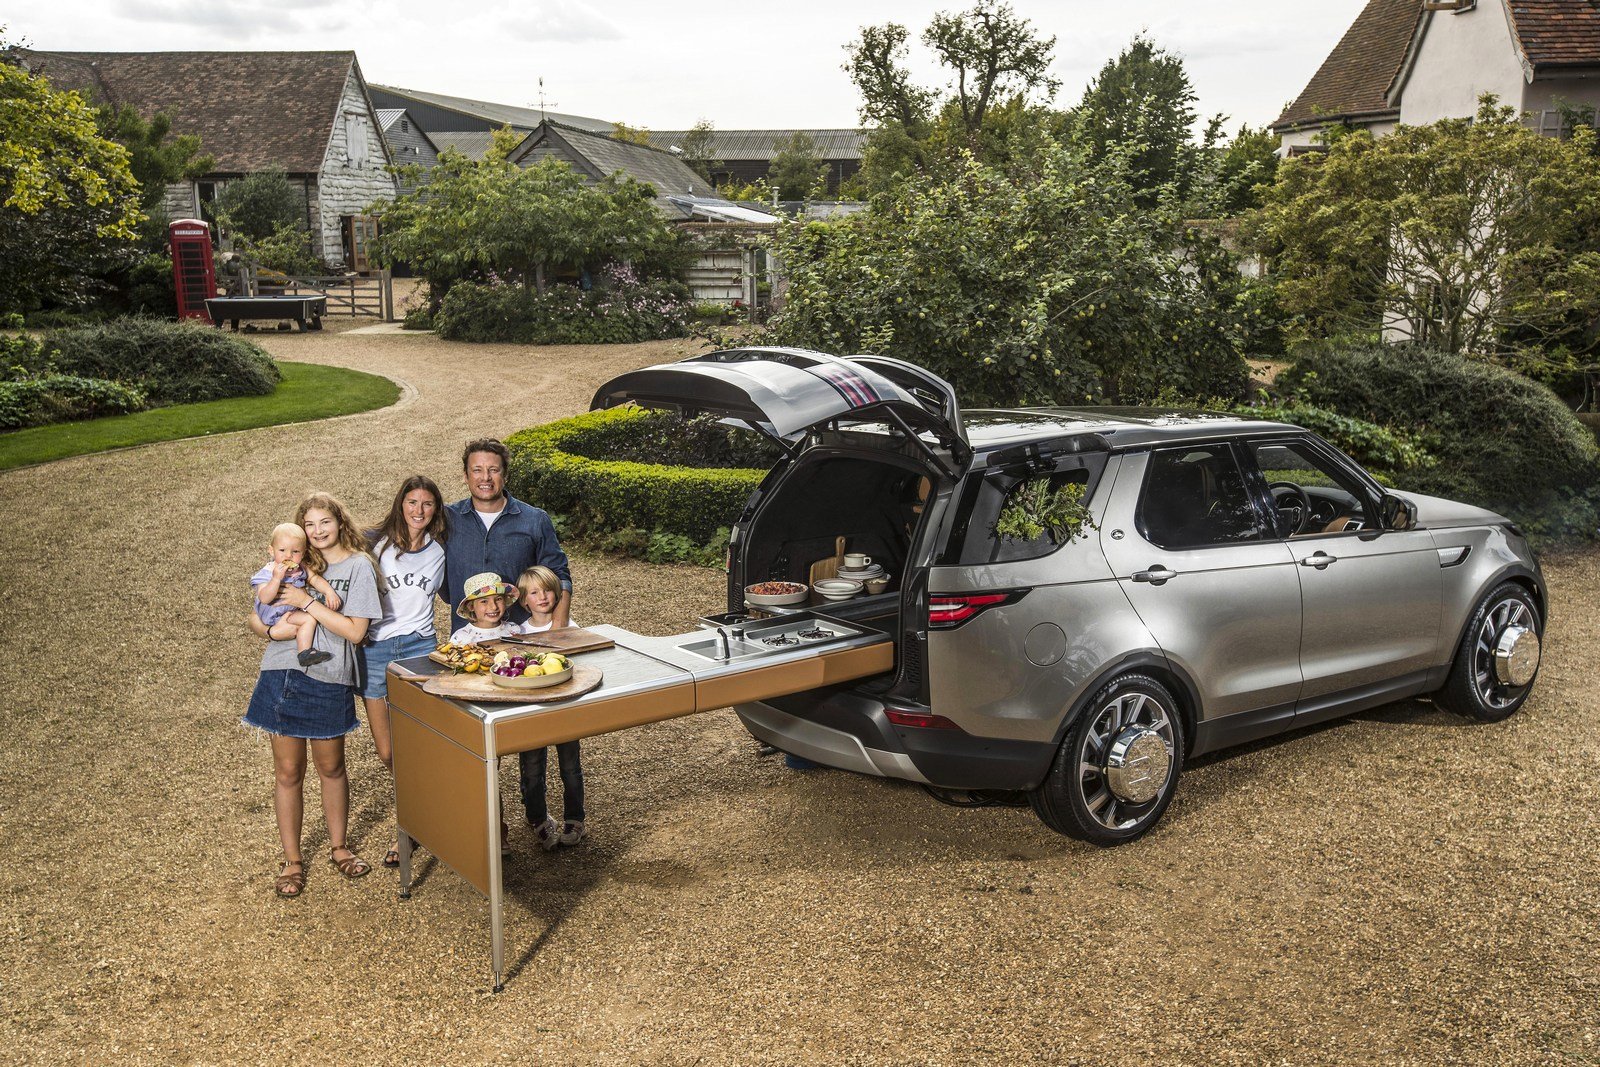 Land Rover Discovery ve speciální úpravě pro Jamie Olivera